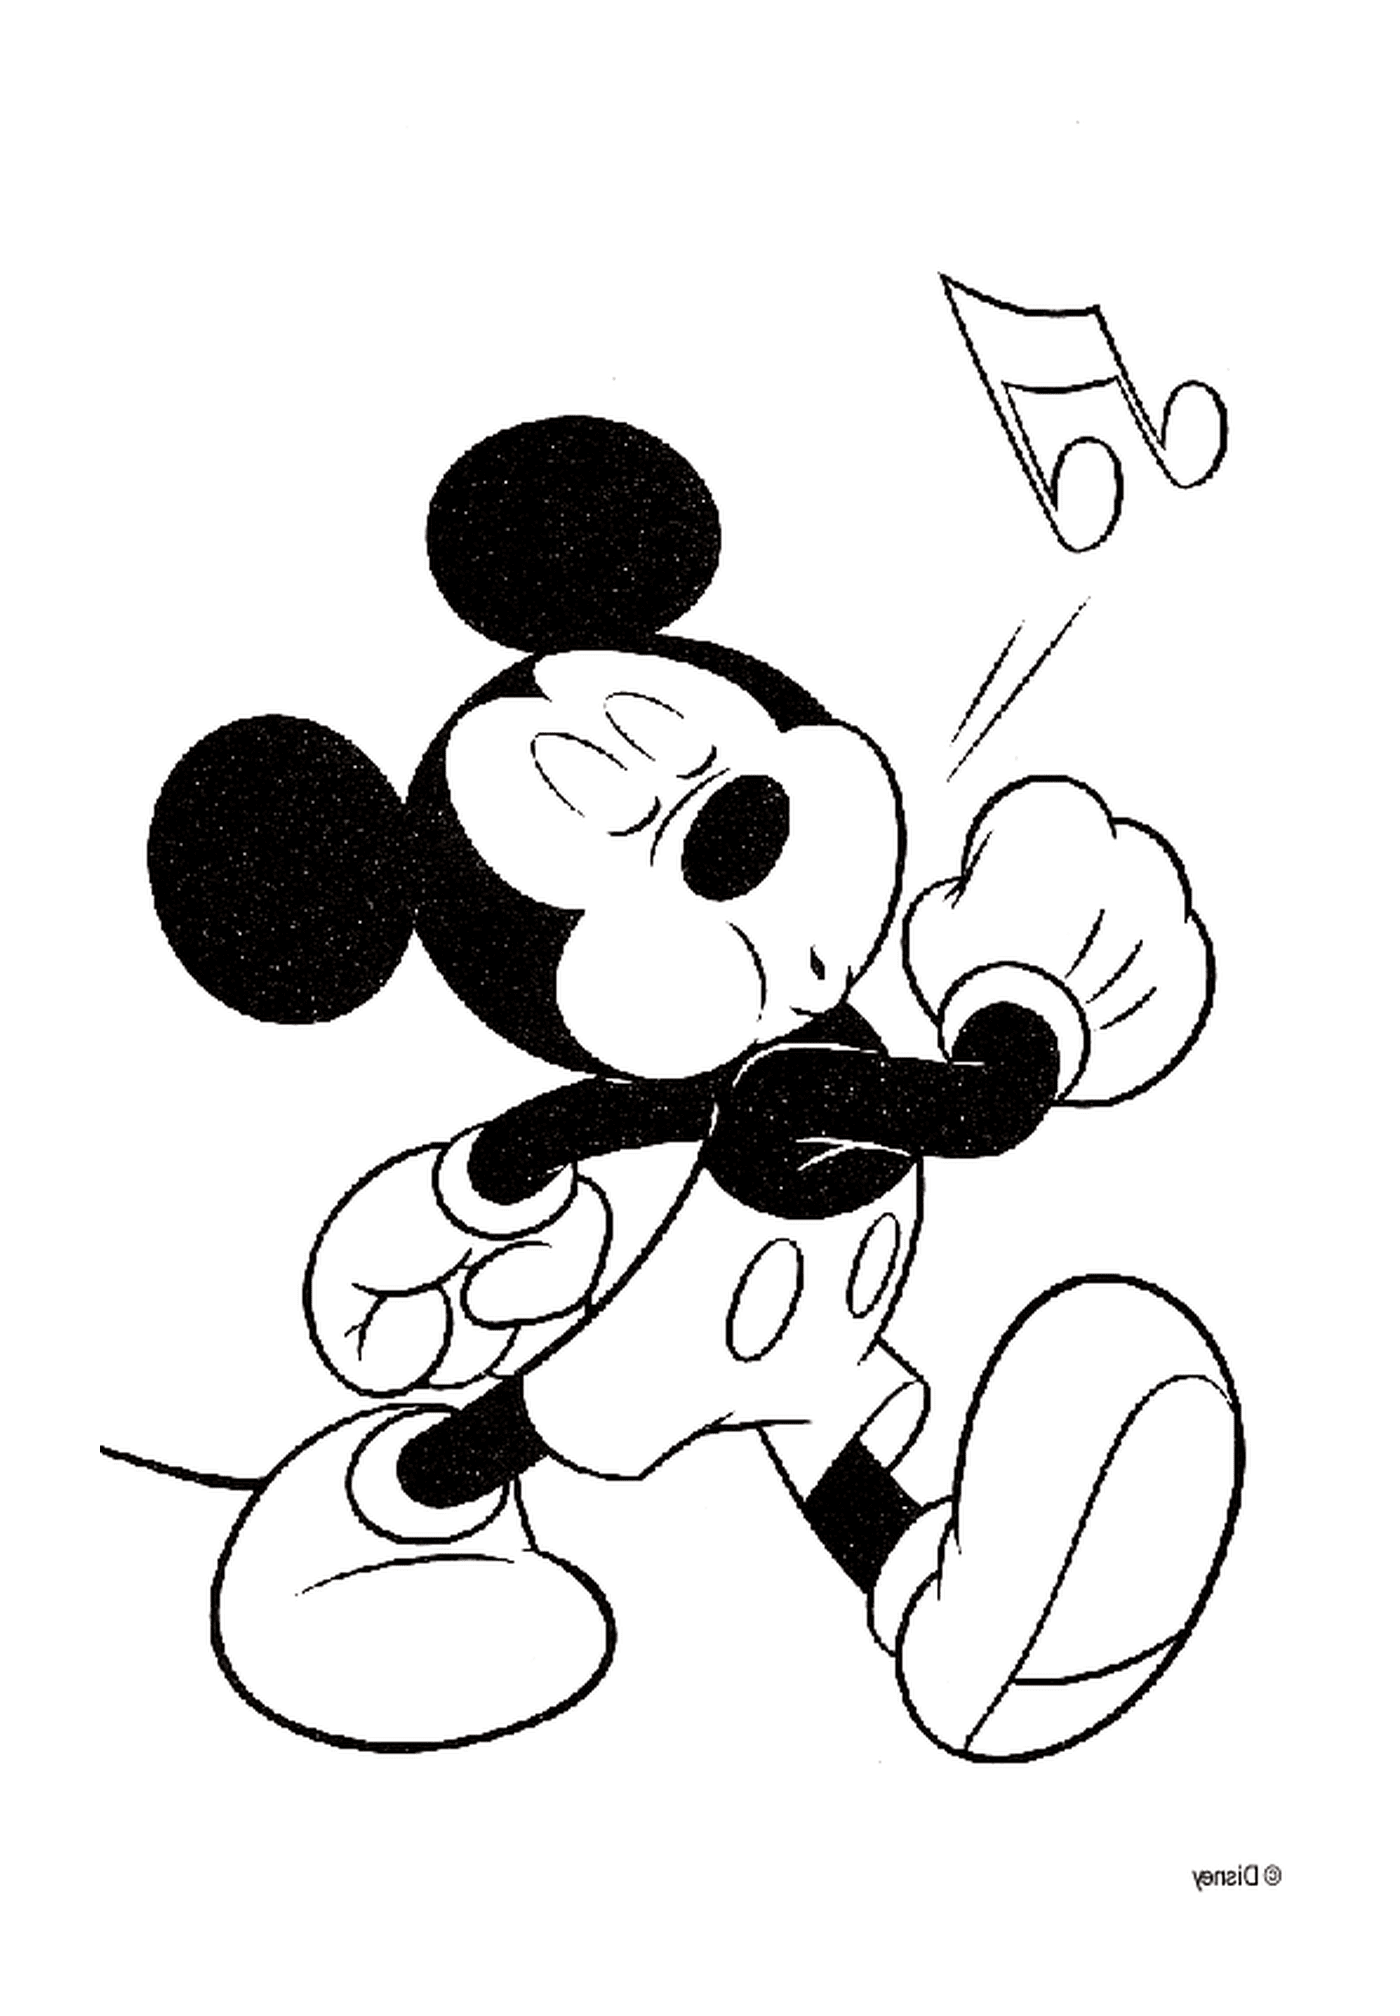  Disegno del fischietto di Mickey 